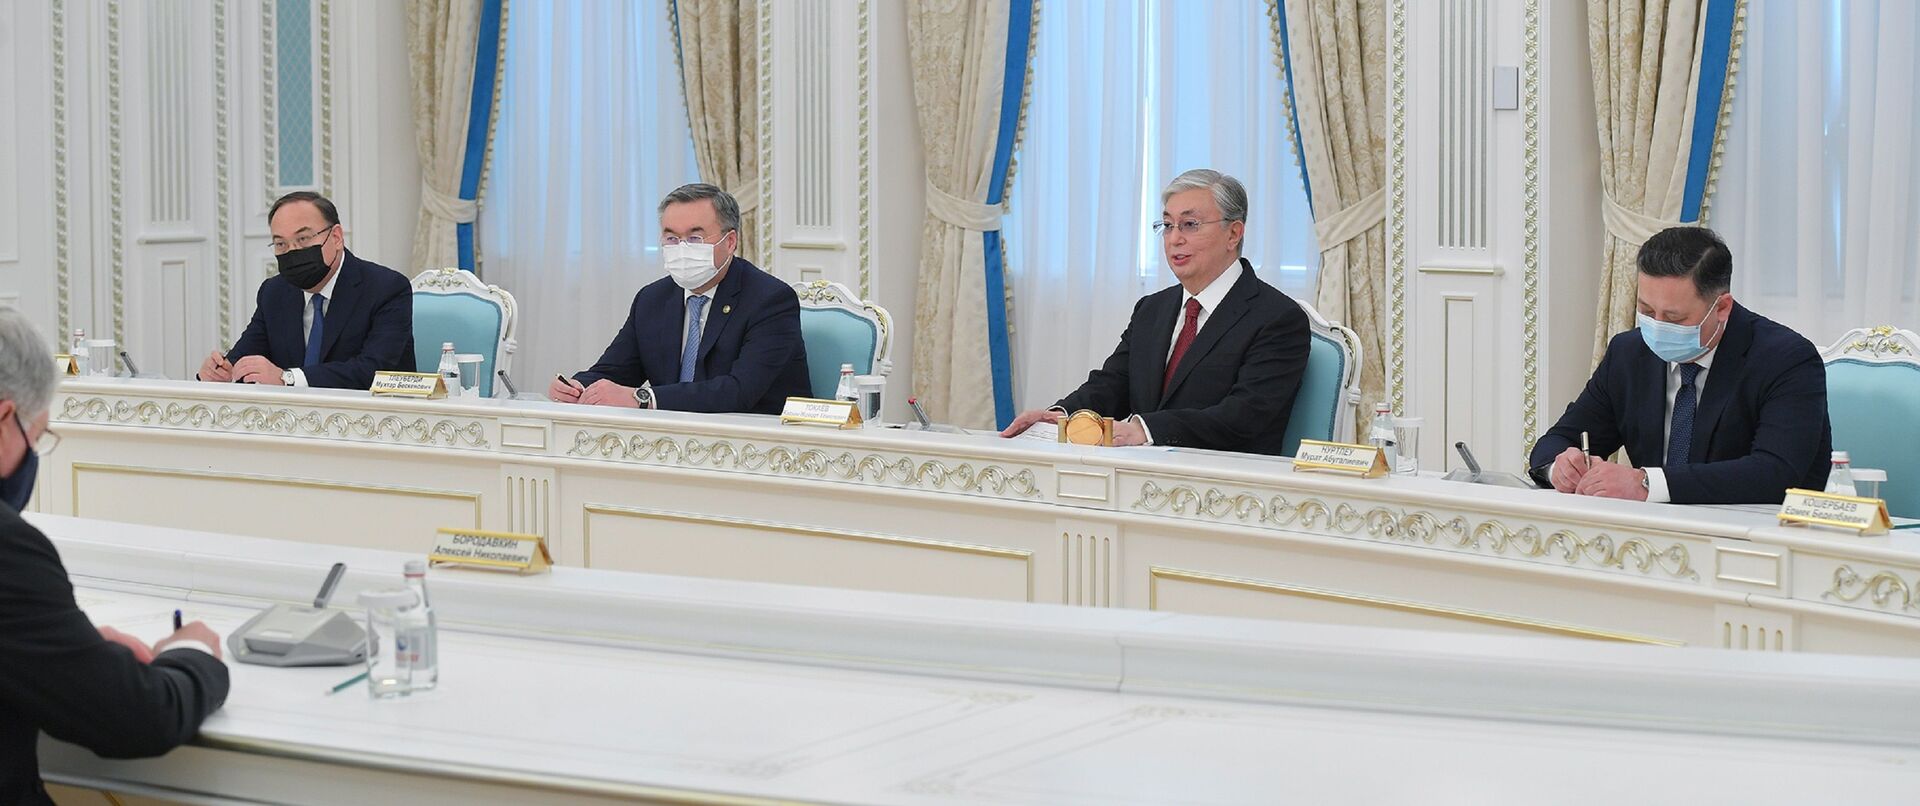 Токаев встретился с министром иностранных дел России Сергеем Лавровым - Sputnik Казахстан, 1920, 08.04.2021